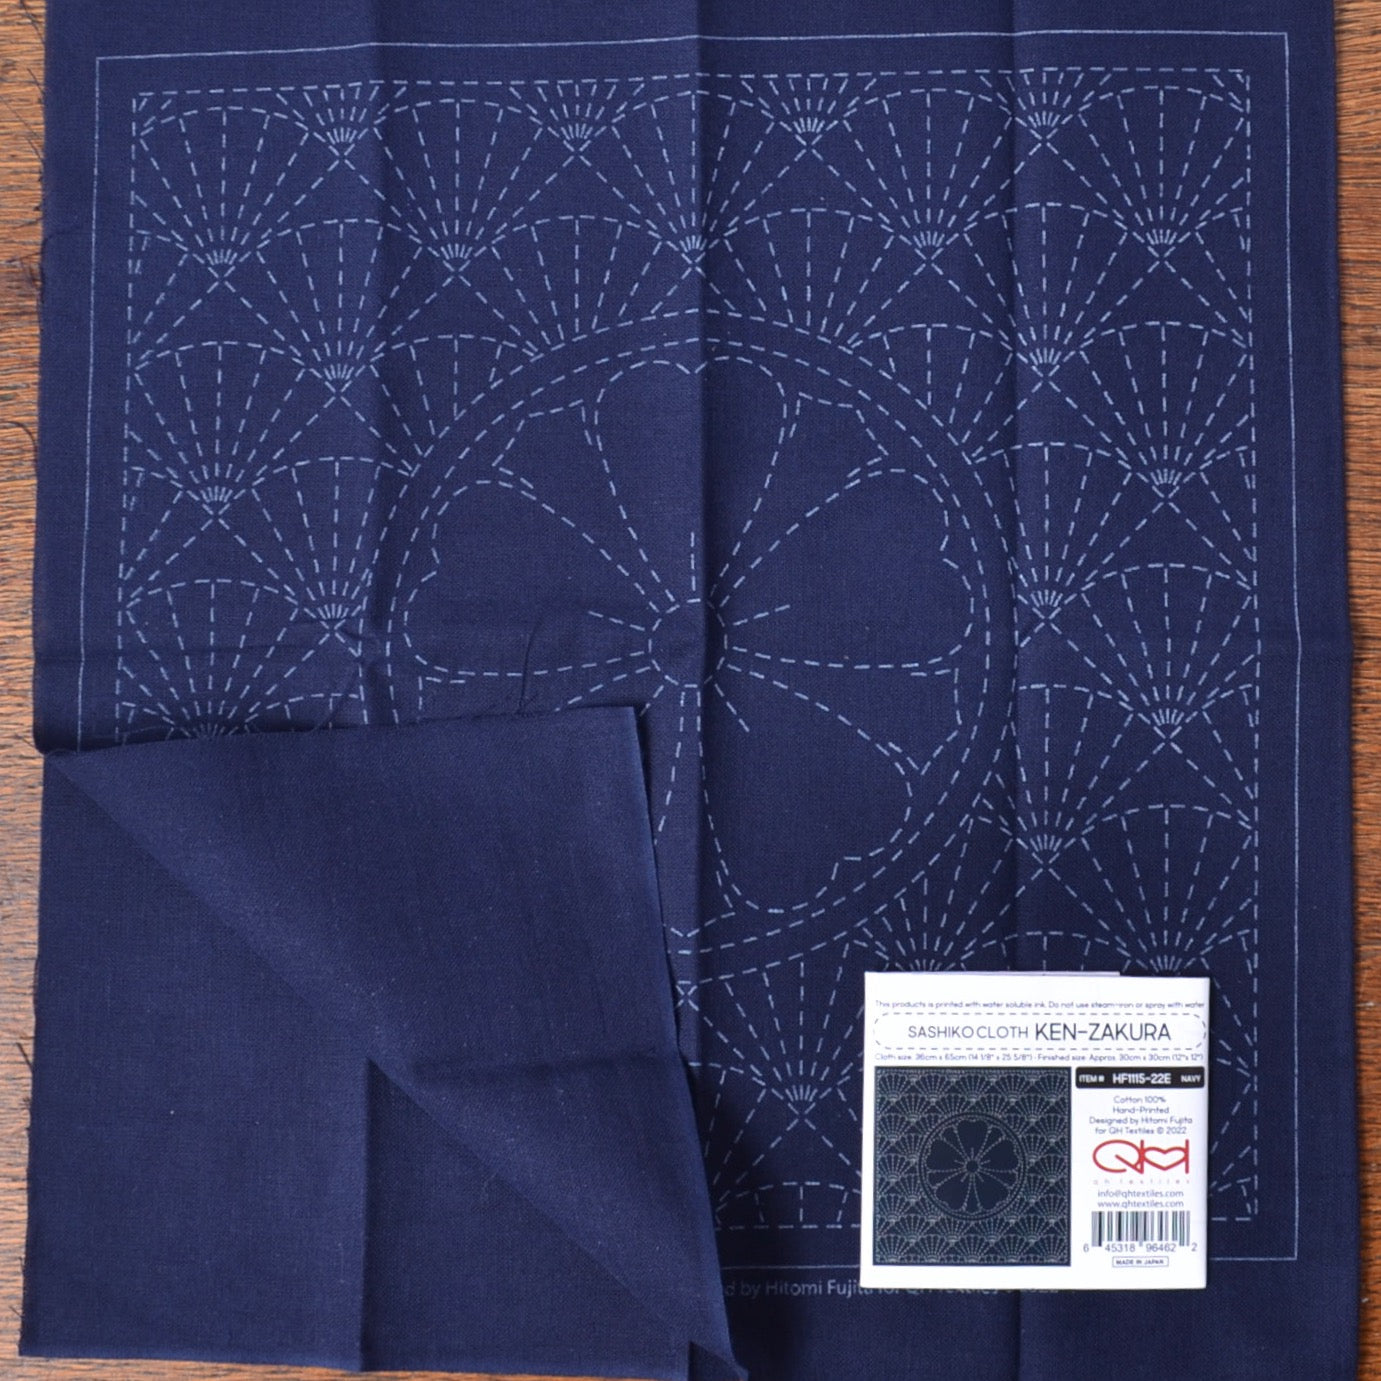 Ken-Zakura Sashiko cloth